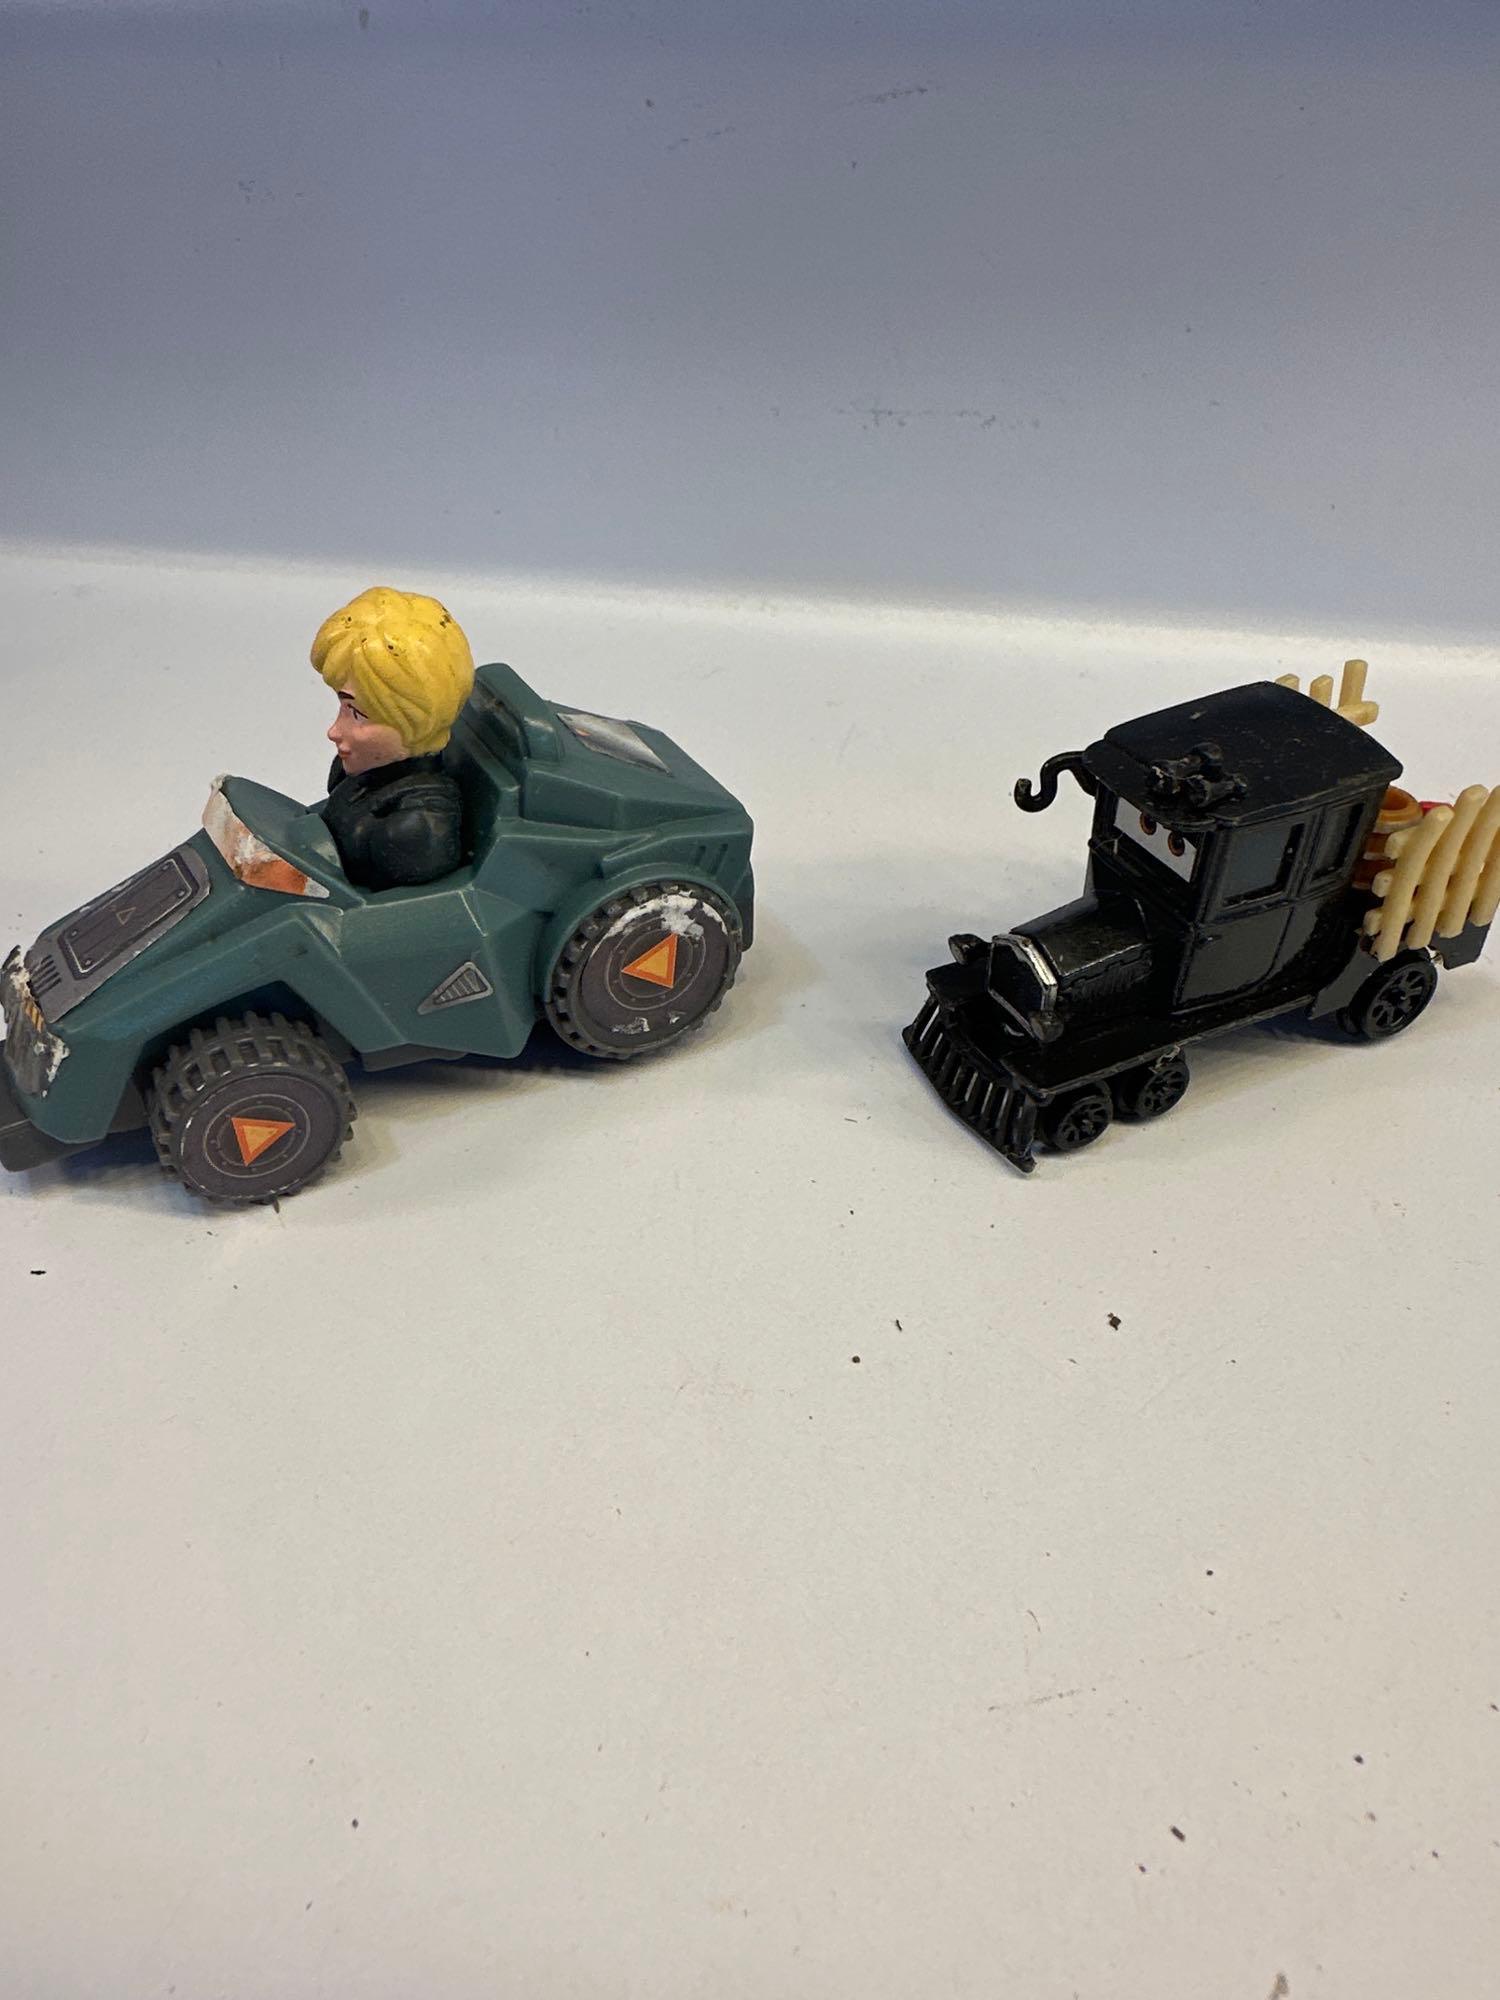 Tonka Race Car, Toy Trucks, Toy Dump Truck, Etc